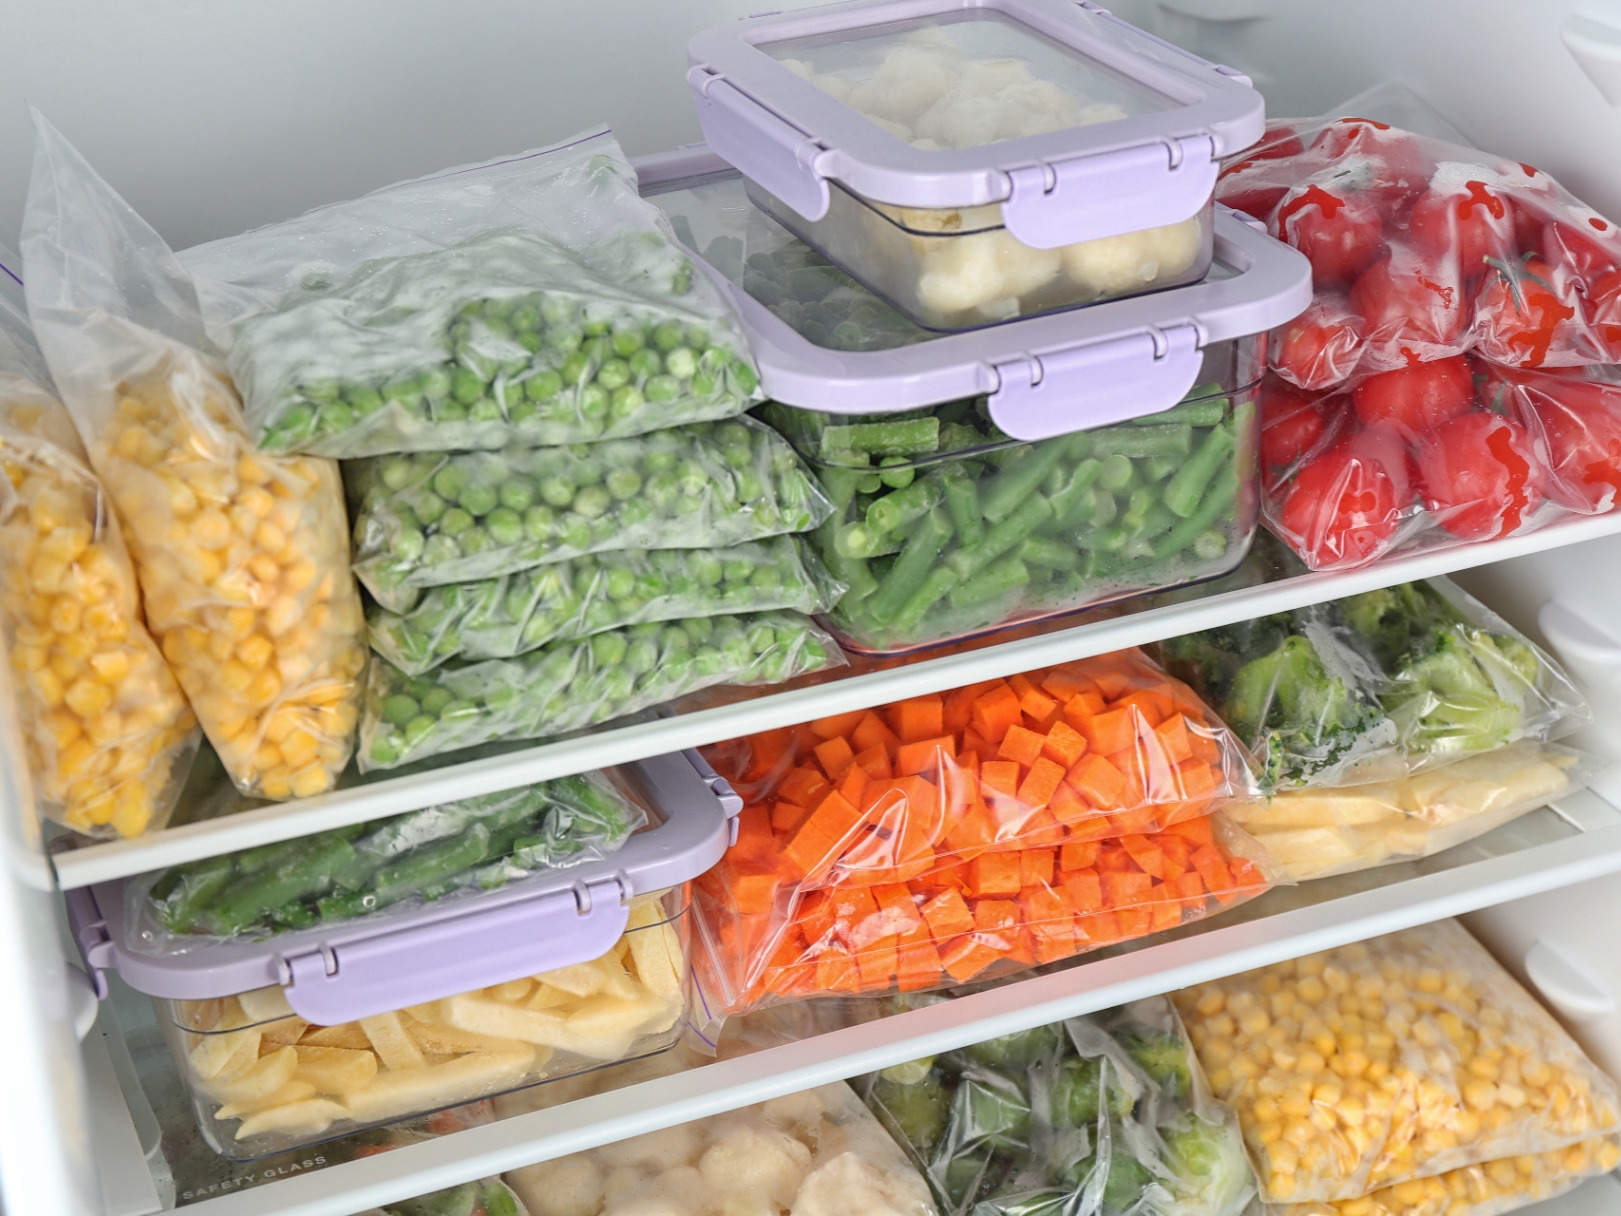 دليلك الشامل لتخزين أطعمتك في الثلاجة 1663616815195